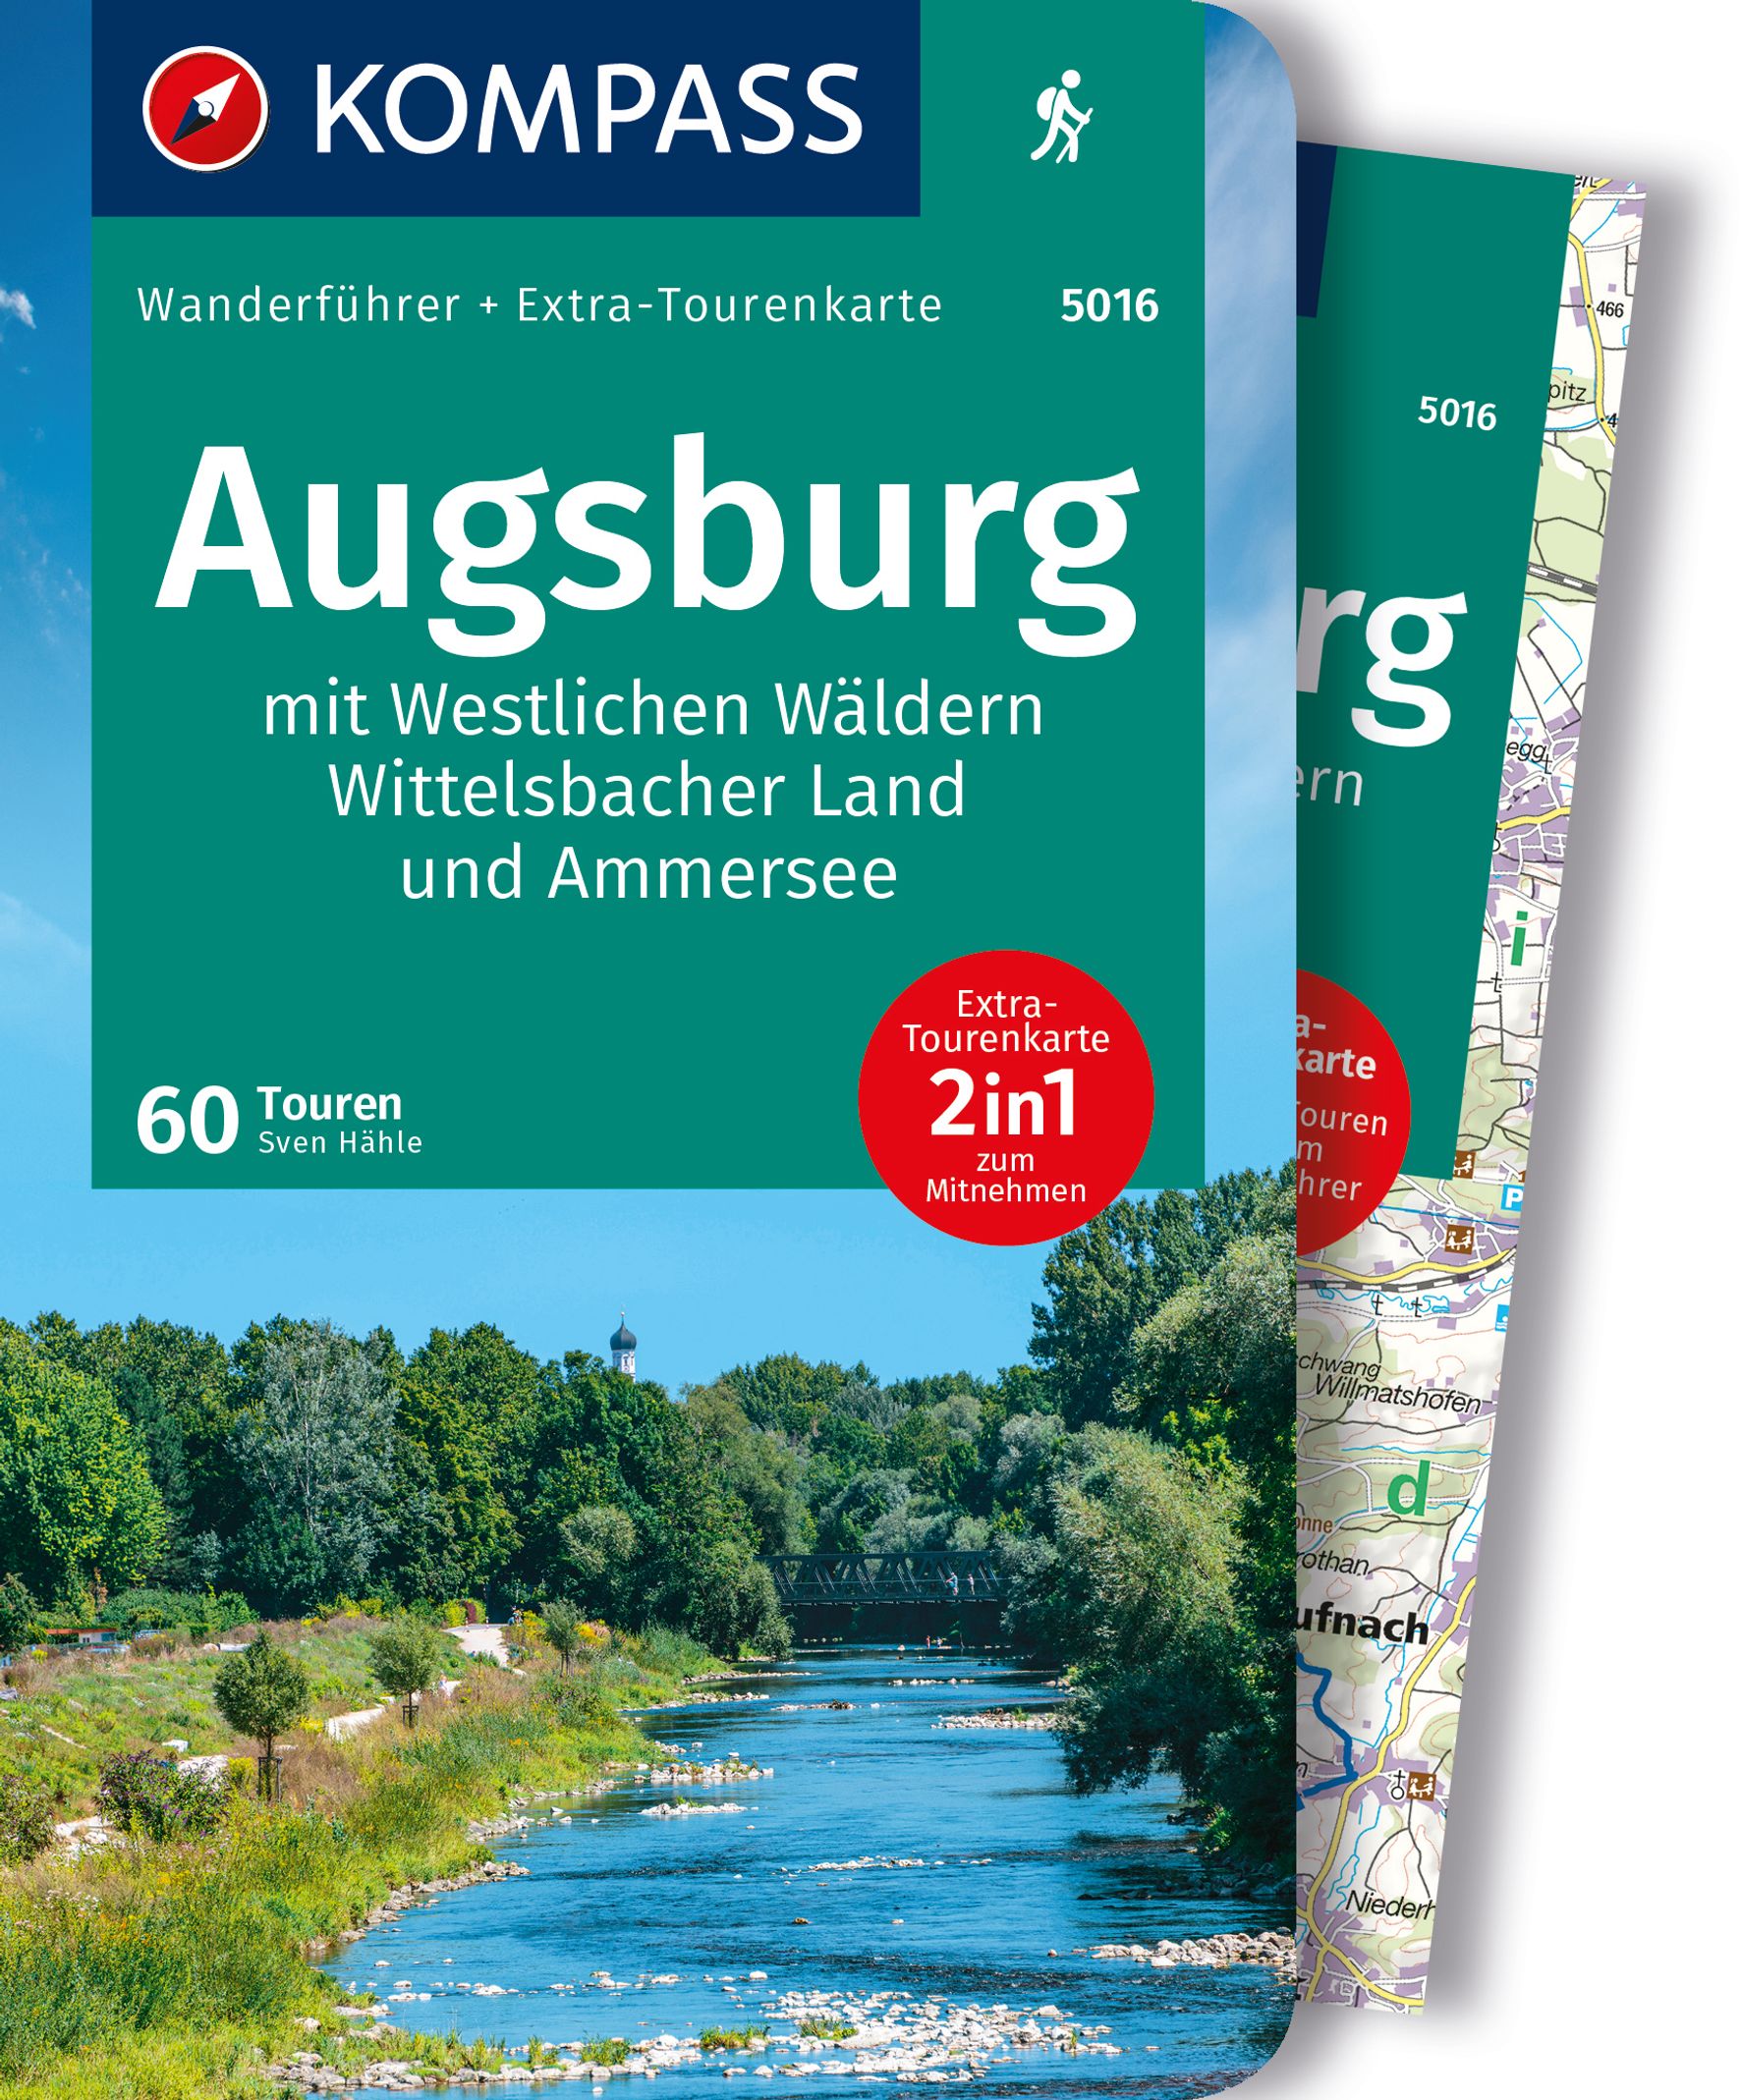 MAIRDUMONT Augsburg mit Westlichen Wäldern, Wittelsbacher Land und Ammersee, 60 Touren mit Extra-Tourenkarte